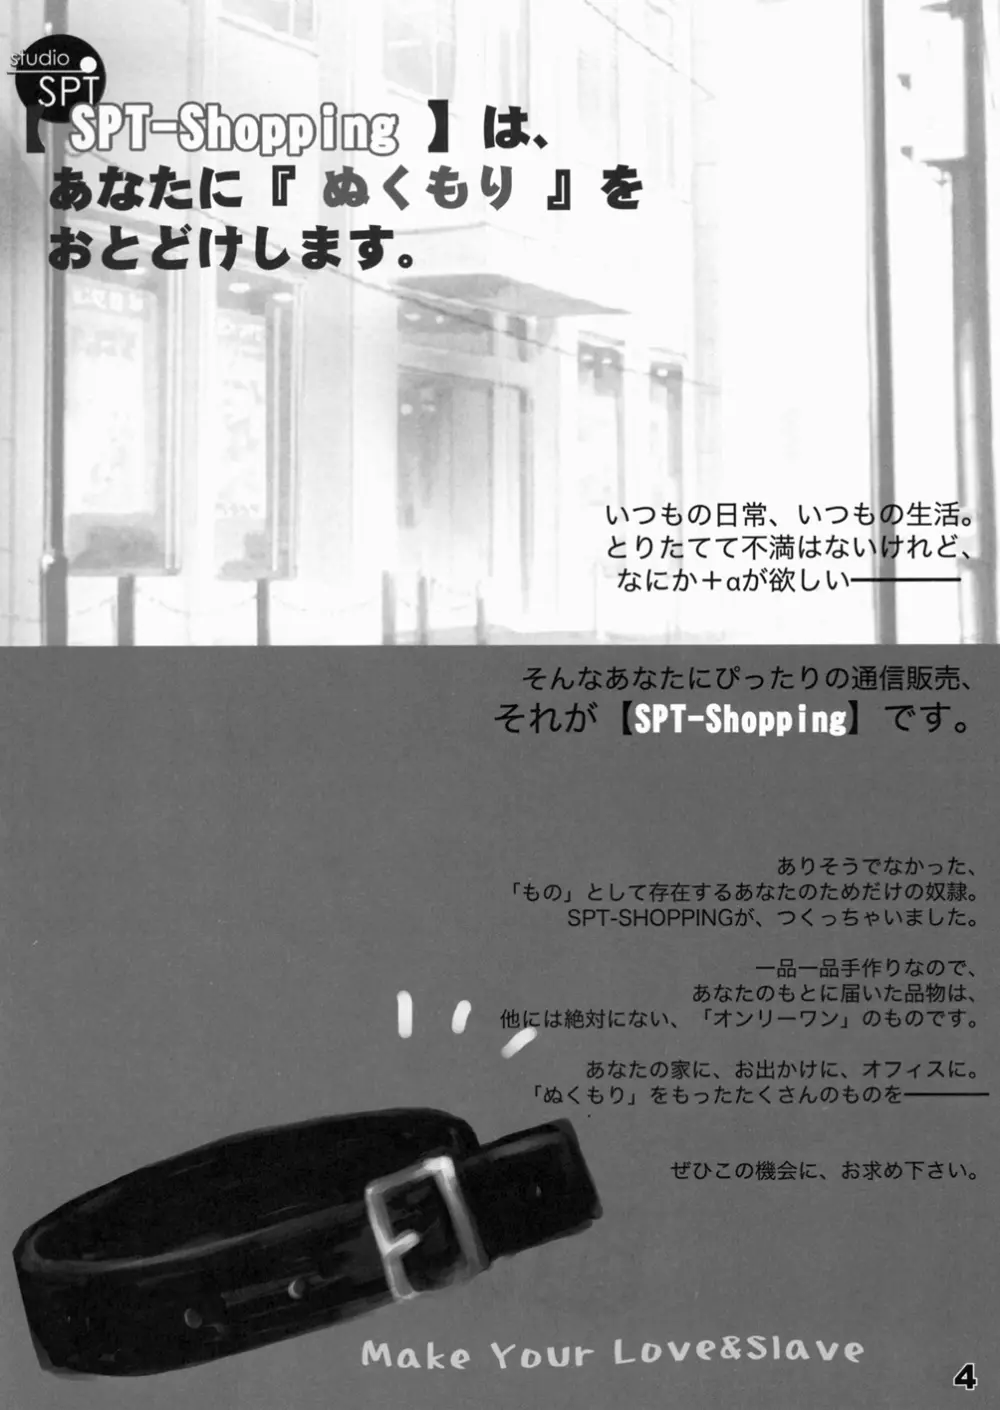 少女通販カタログ 創刊号 2006 Winter Collection 3ページ